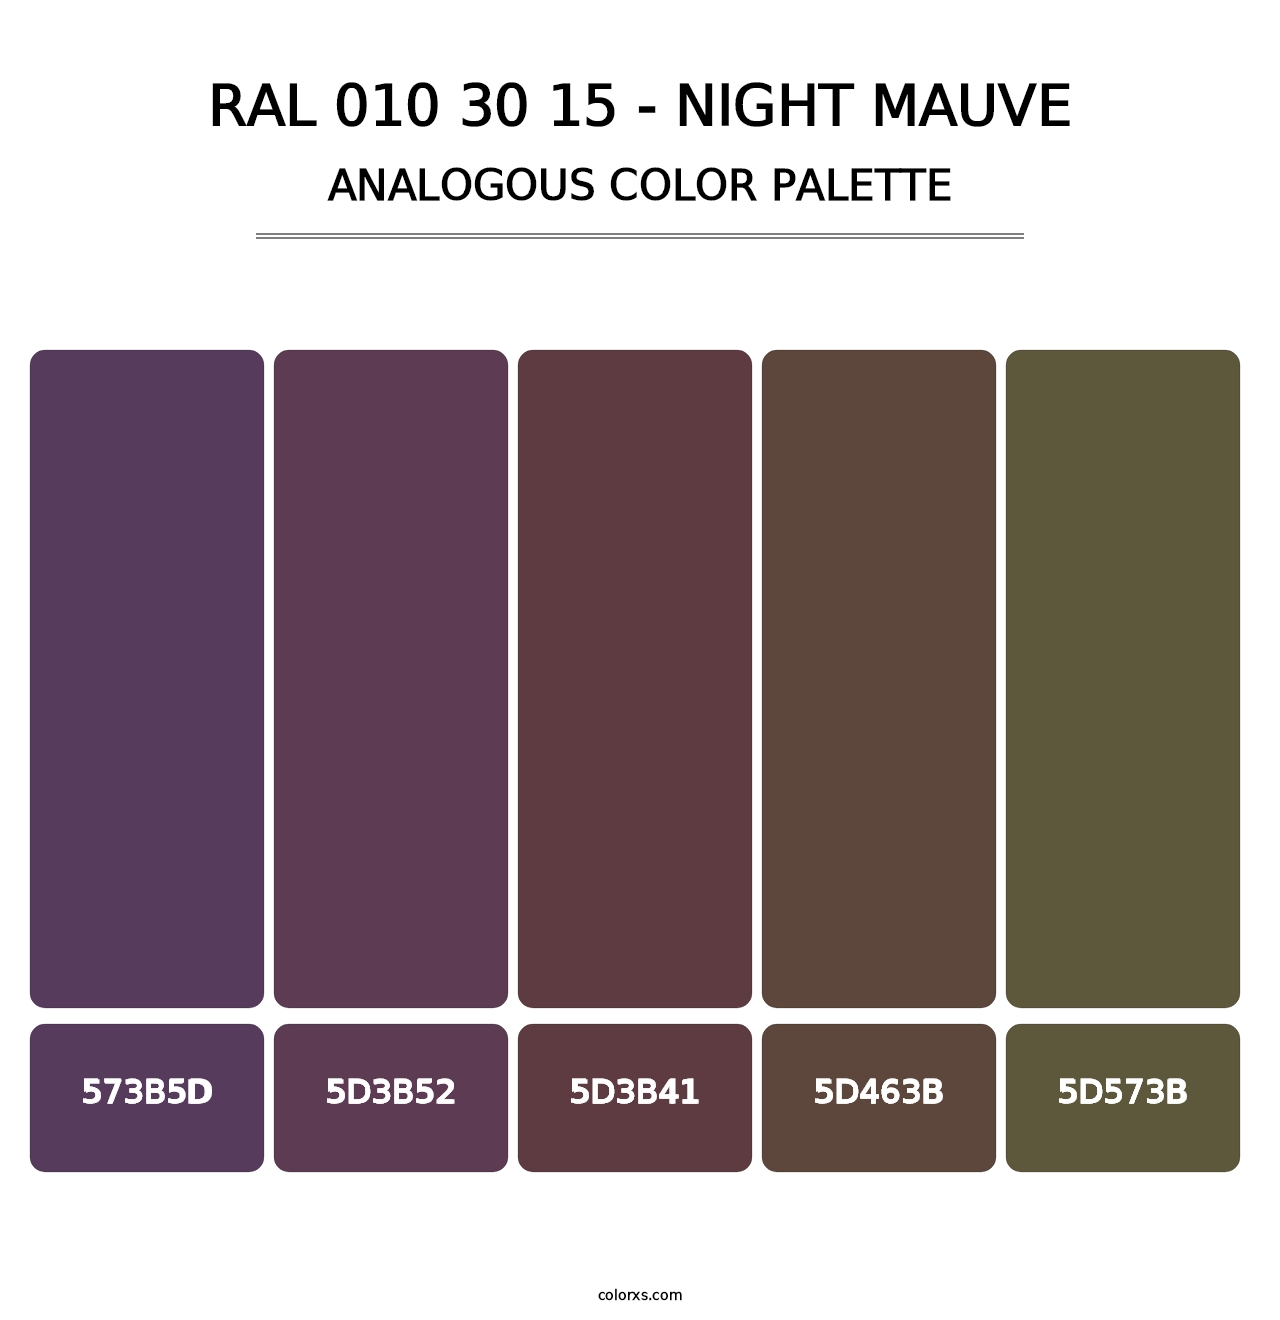 RAL 010 30 15 - Night Mauve - Analogous Color Palette